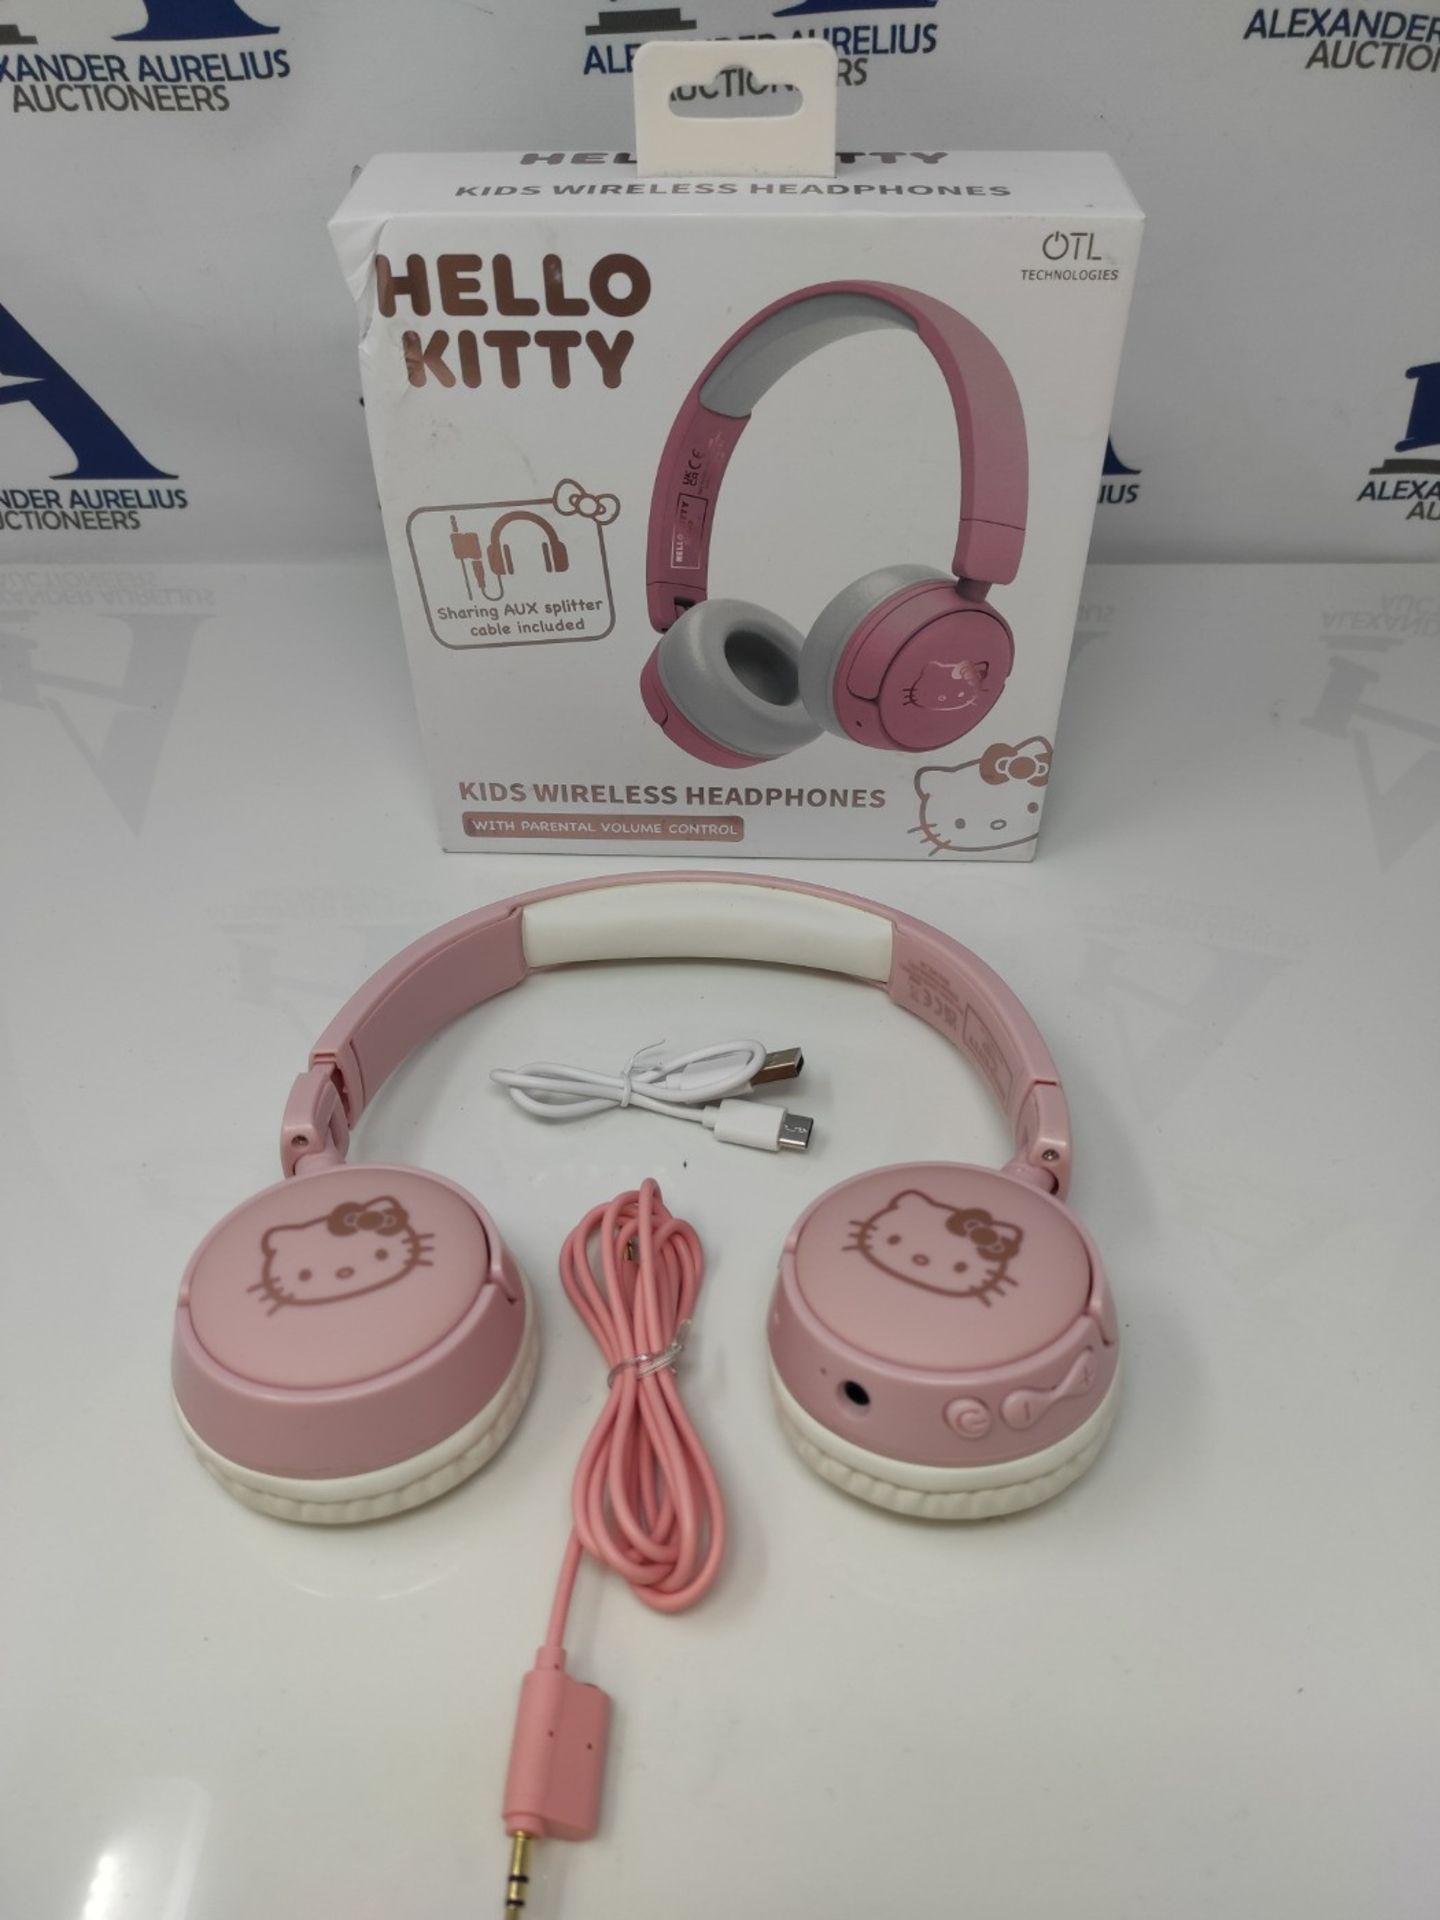 OTL Technologies HK0991 Hello Kitty Kids Wireless Headphones - Pink - Image 2 of 3